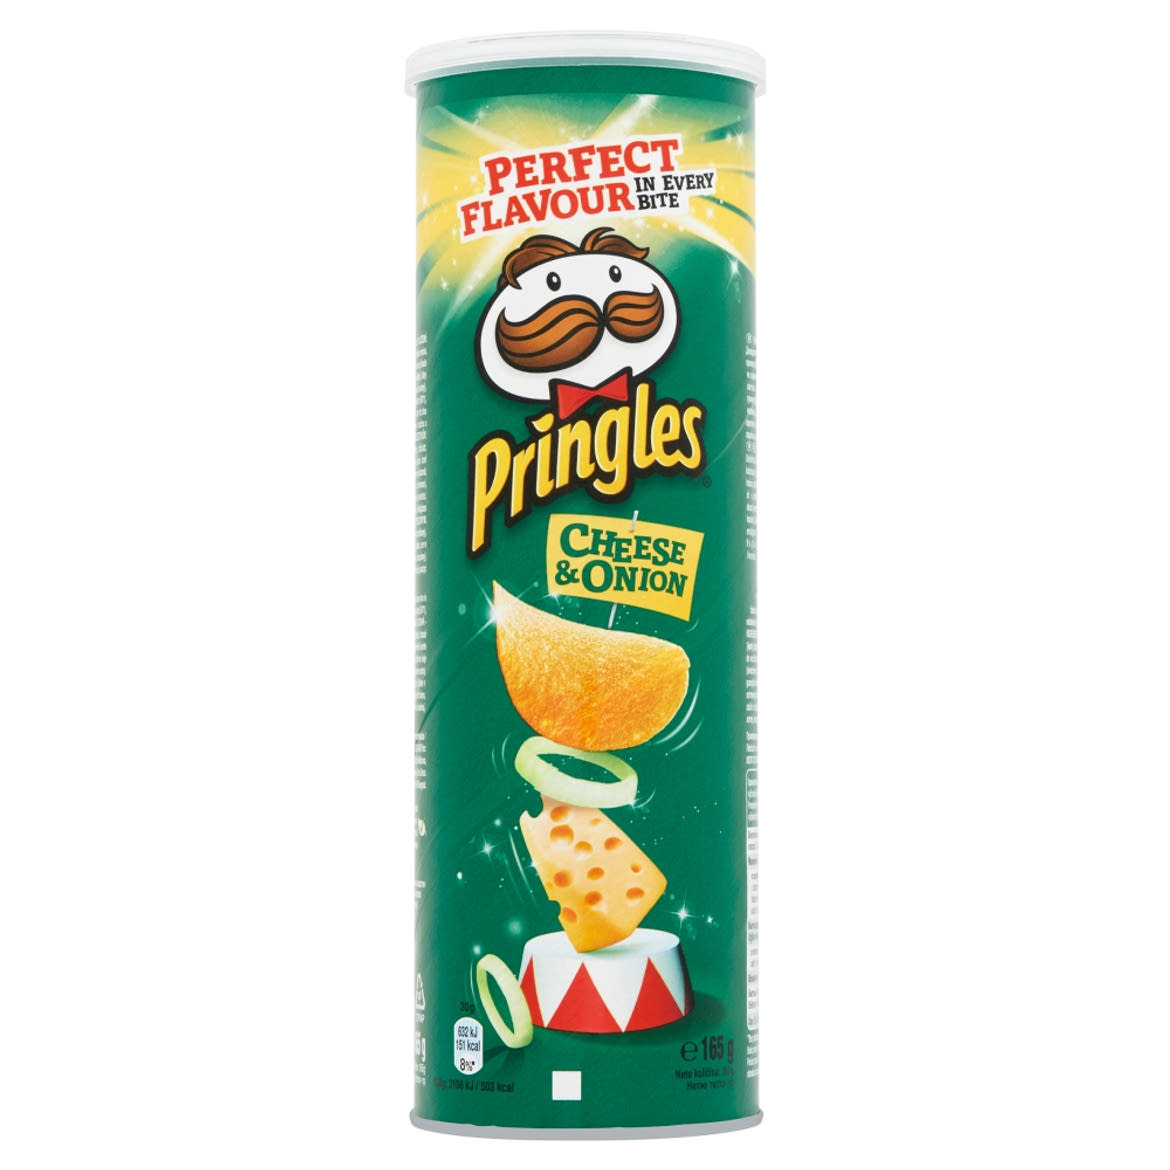 Pringles hagymás-sajtos ízesítésű snack